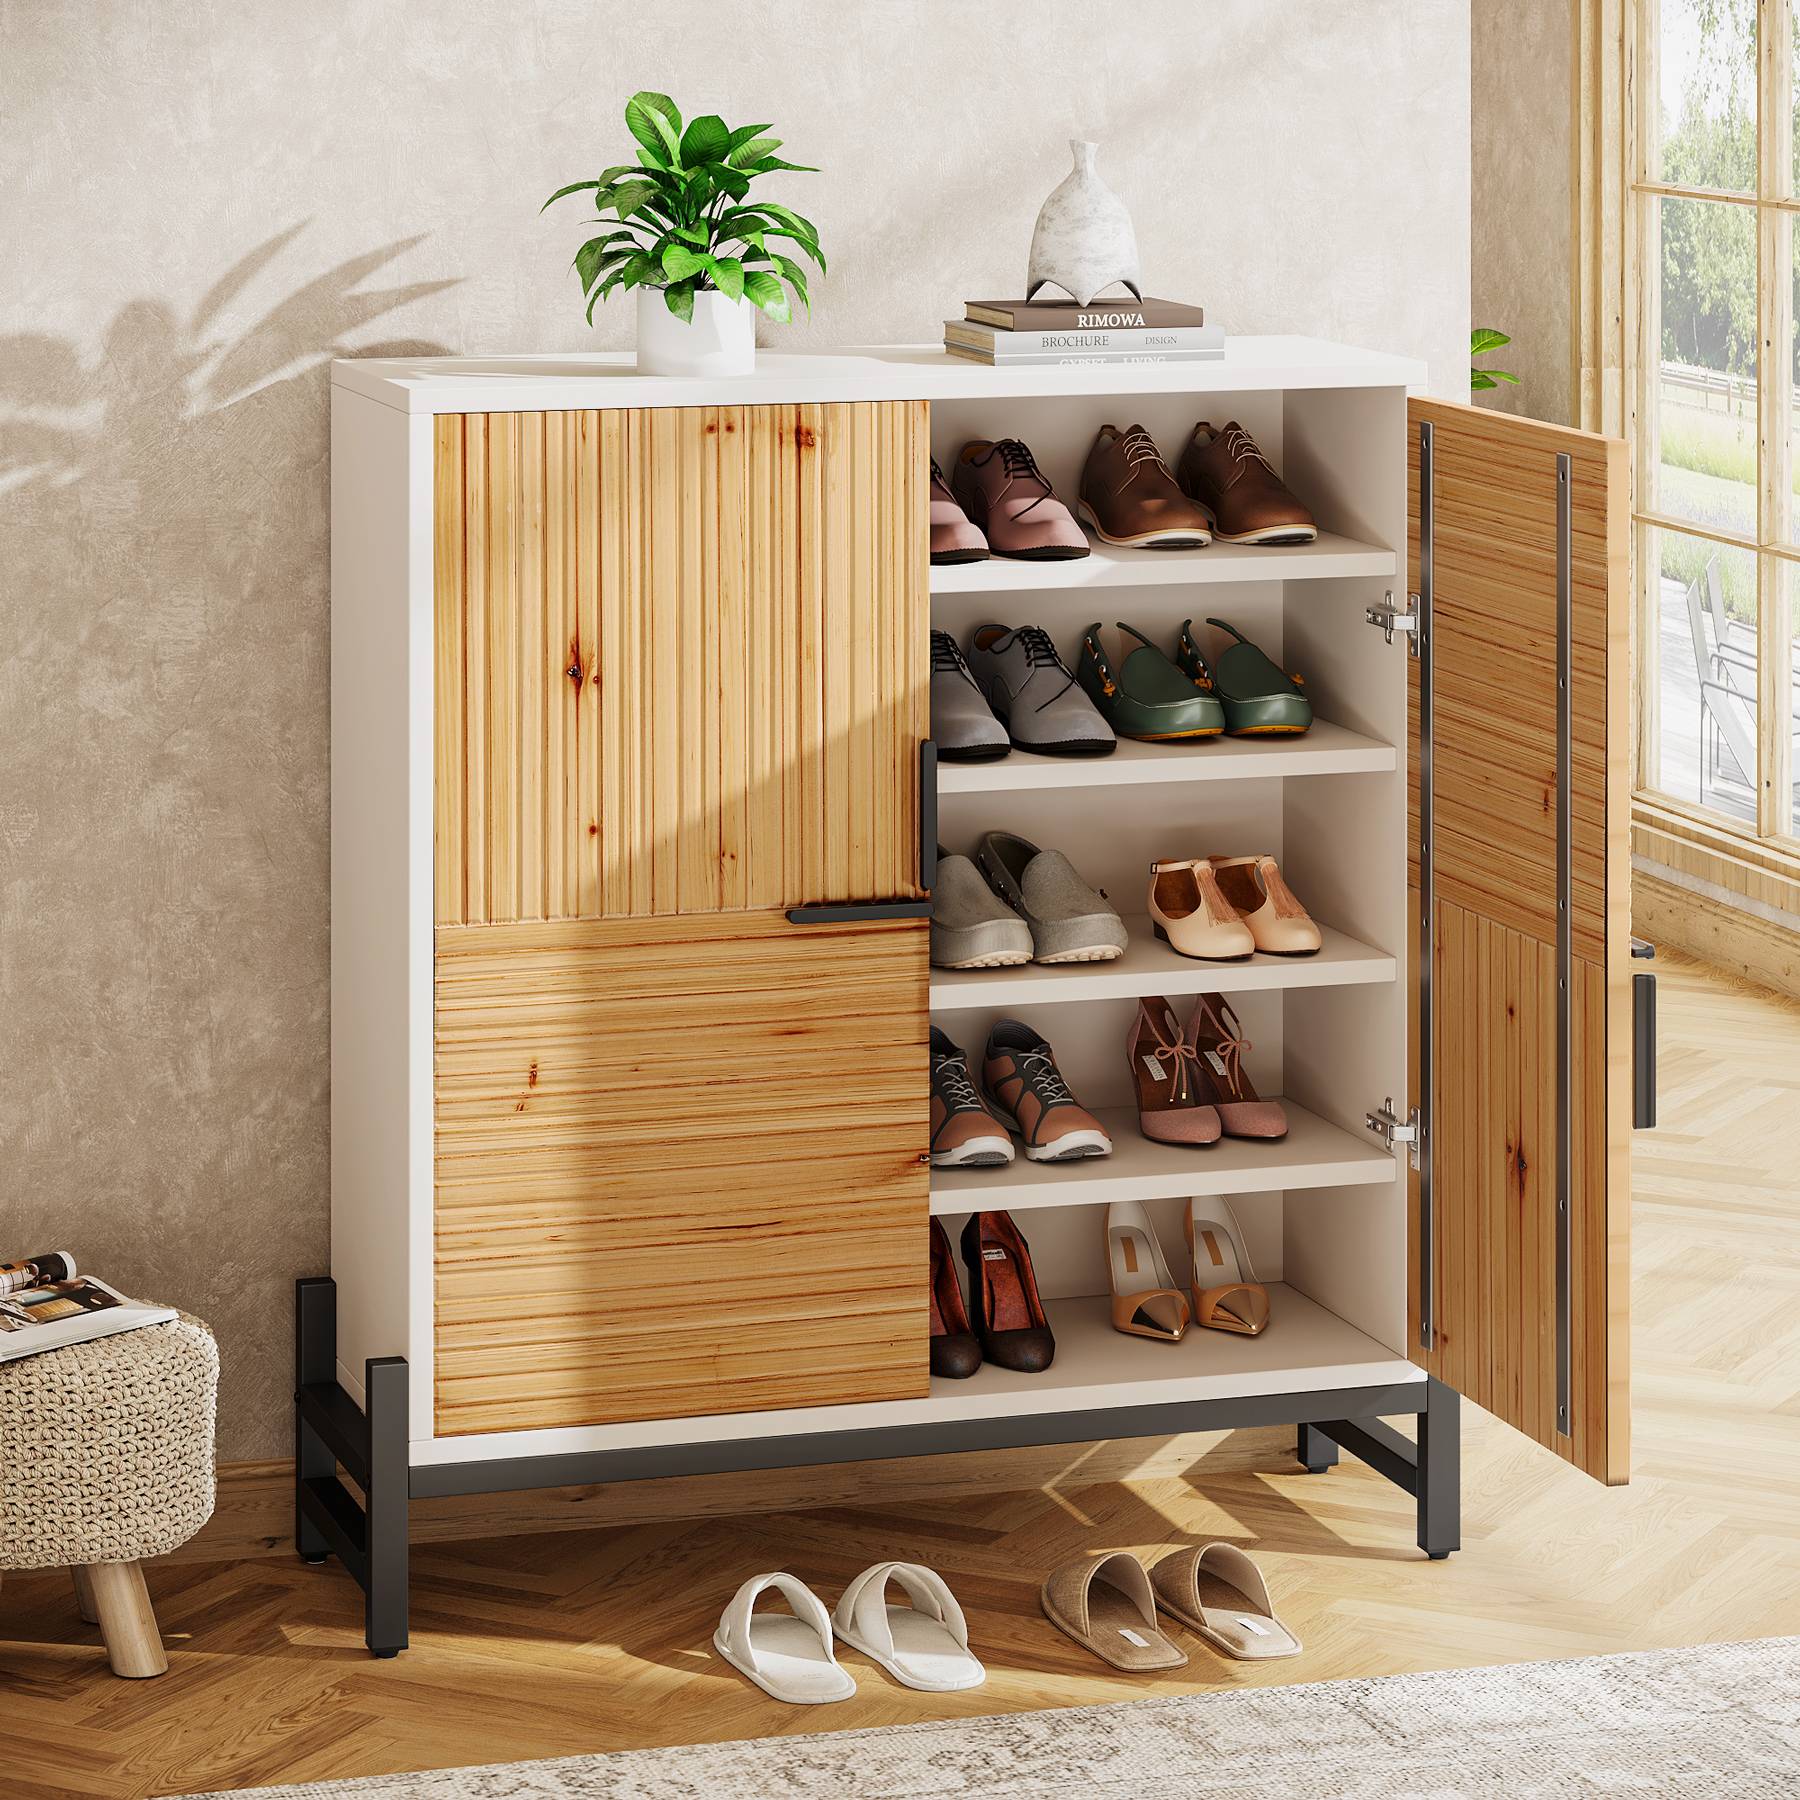 5-Tier Shoe Cabinet, Shoe Organizer with Doors & Adjustable Shelves